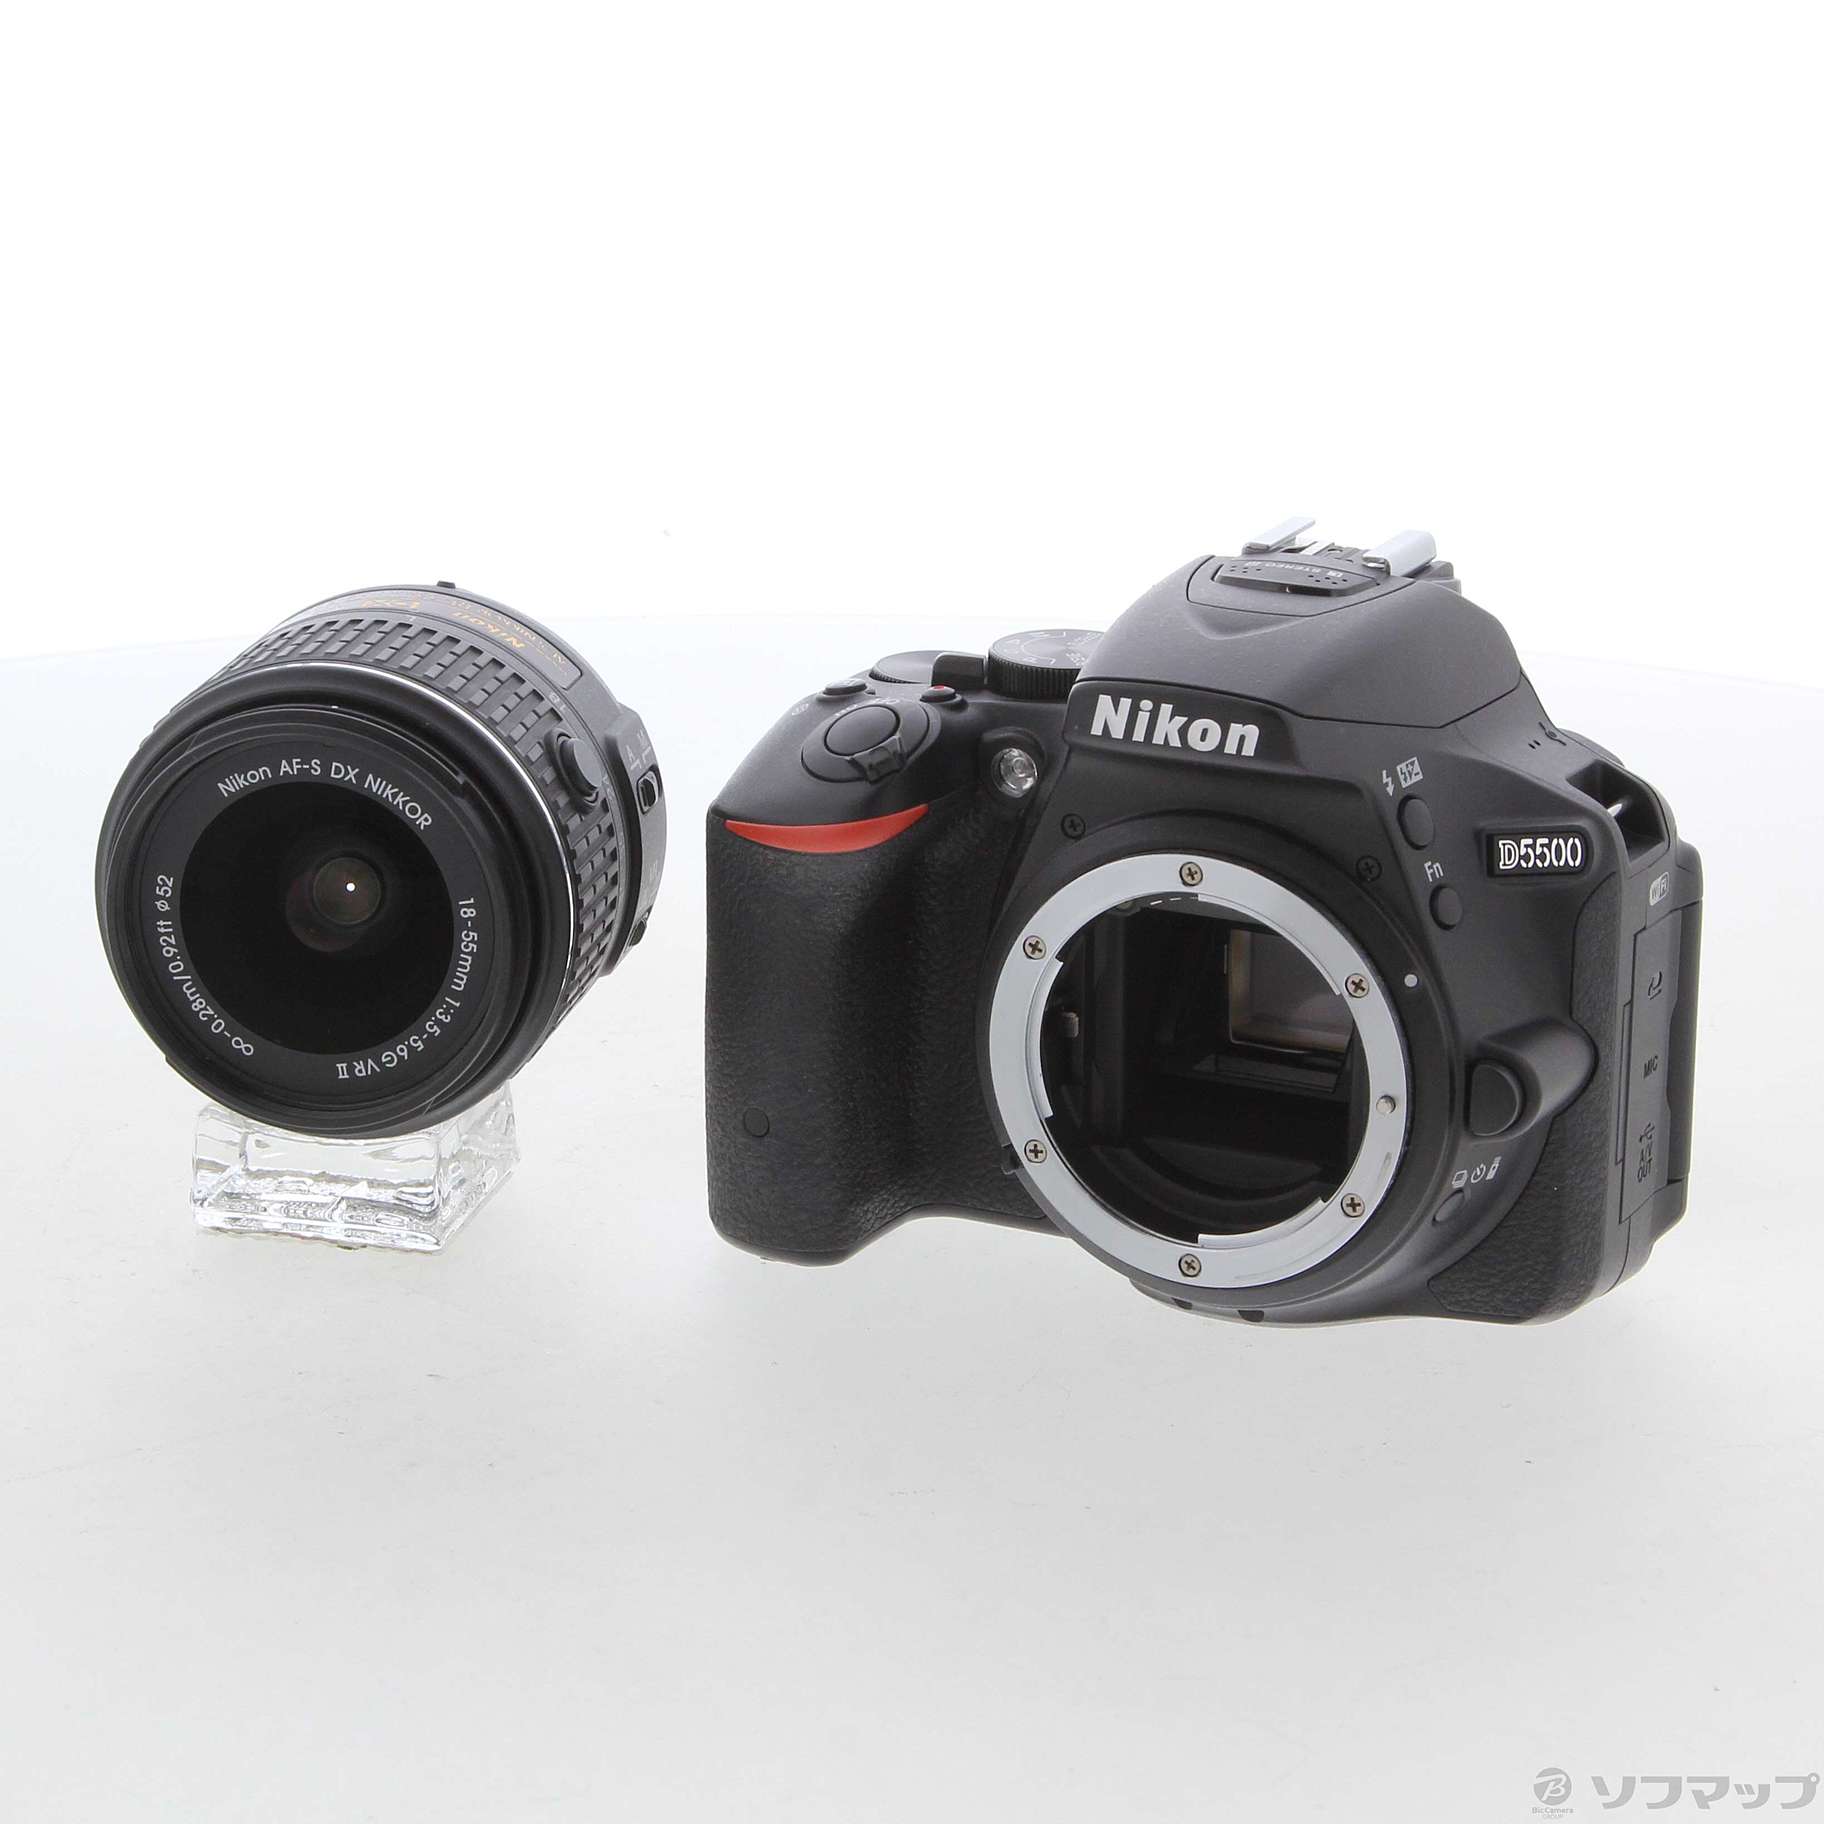 Nikon D5500 18-55 VR Ⅱ kit